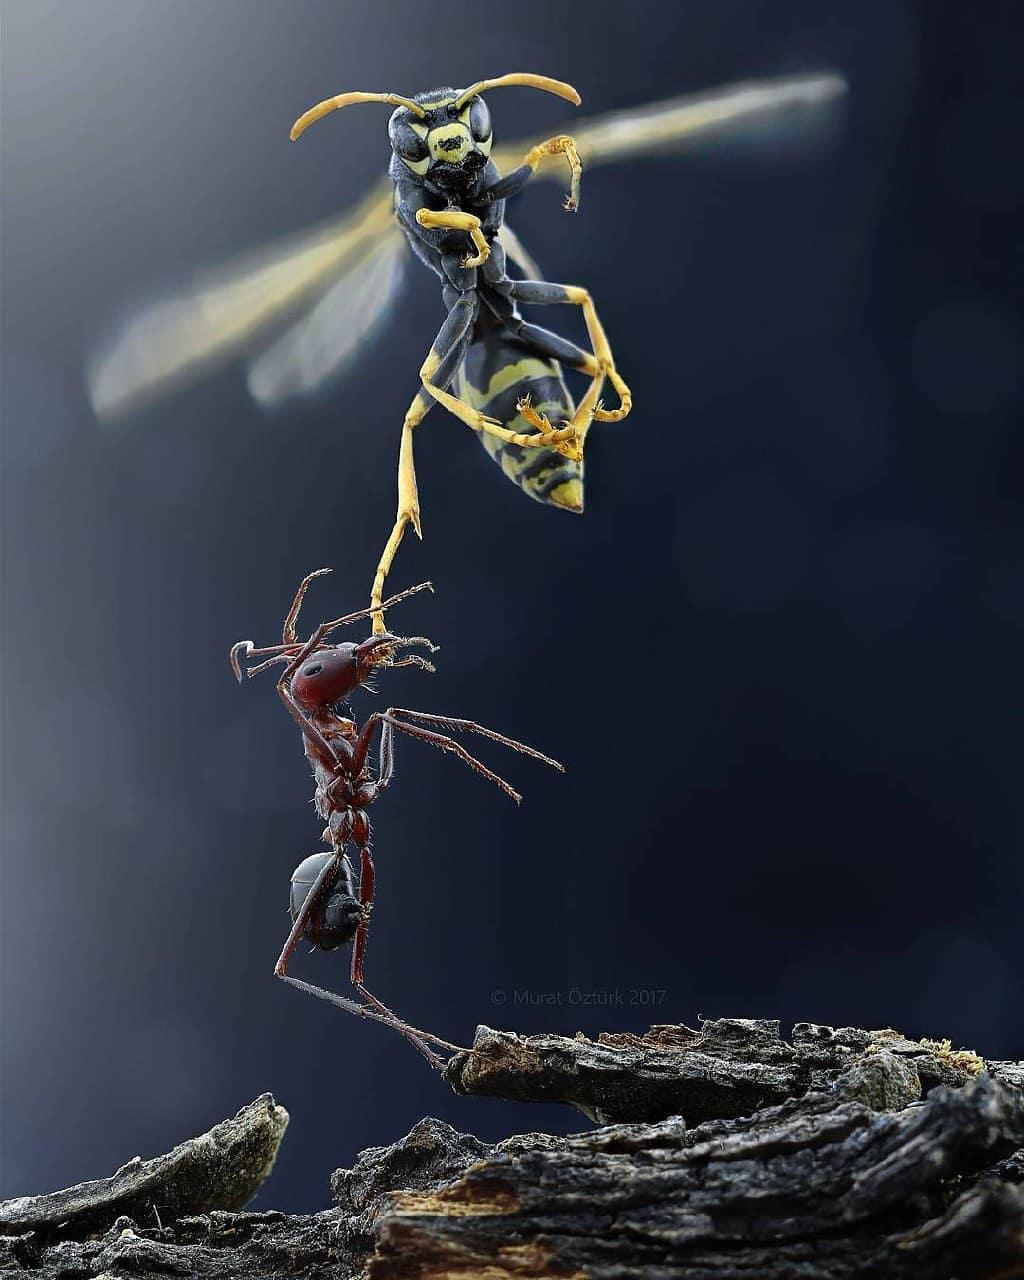  与蜜蜂争斗的蚂蚁，来自摄影师Murat Öztürk。 